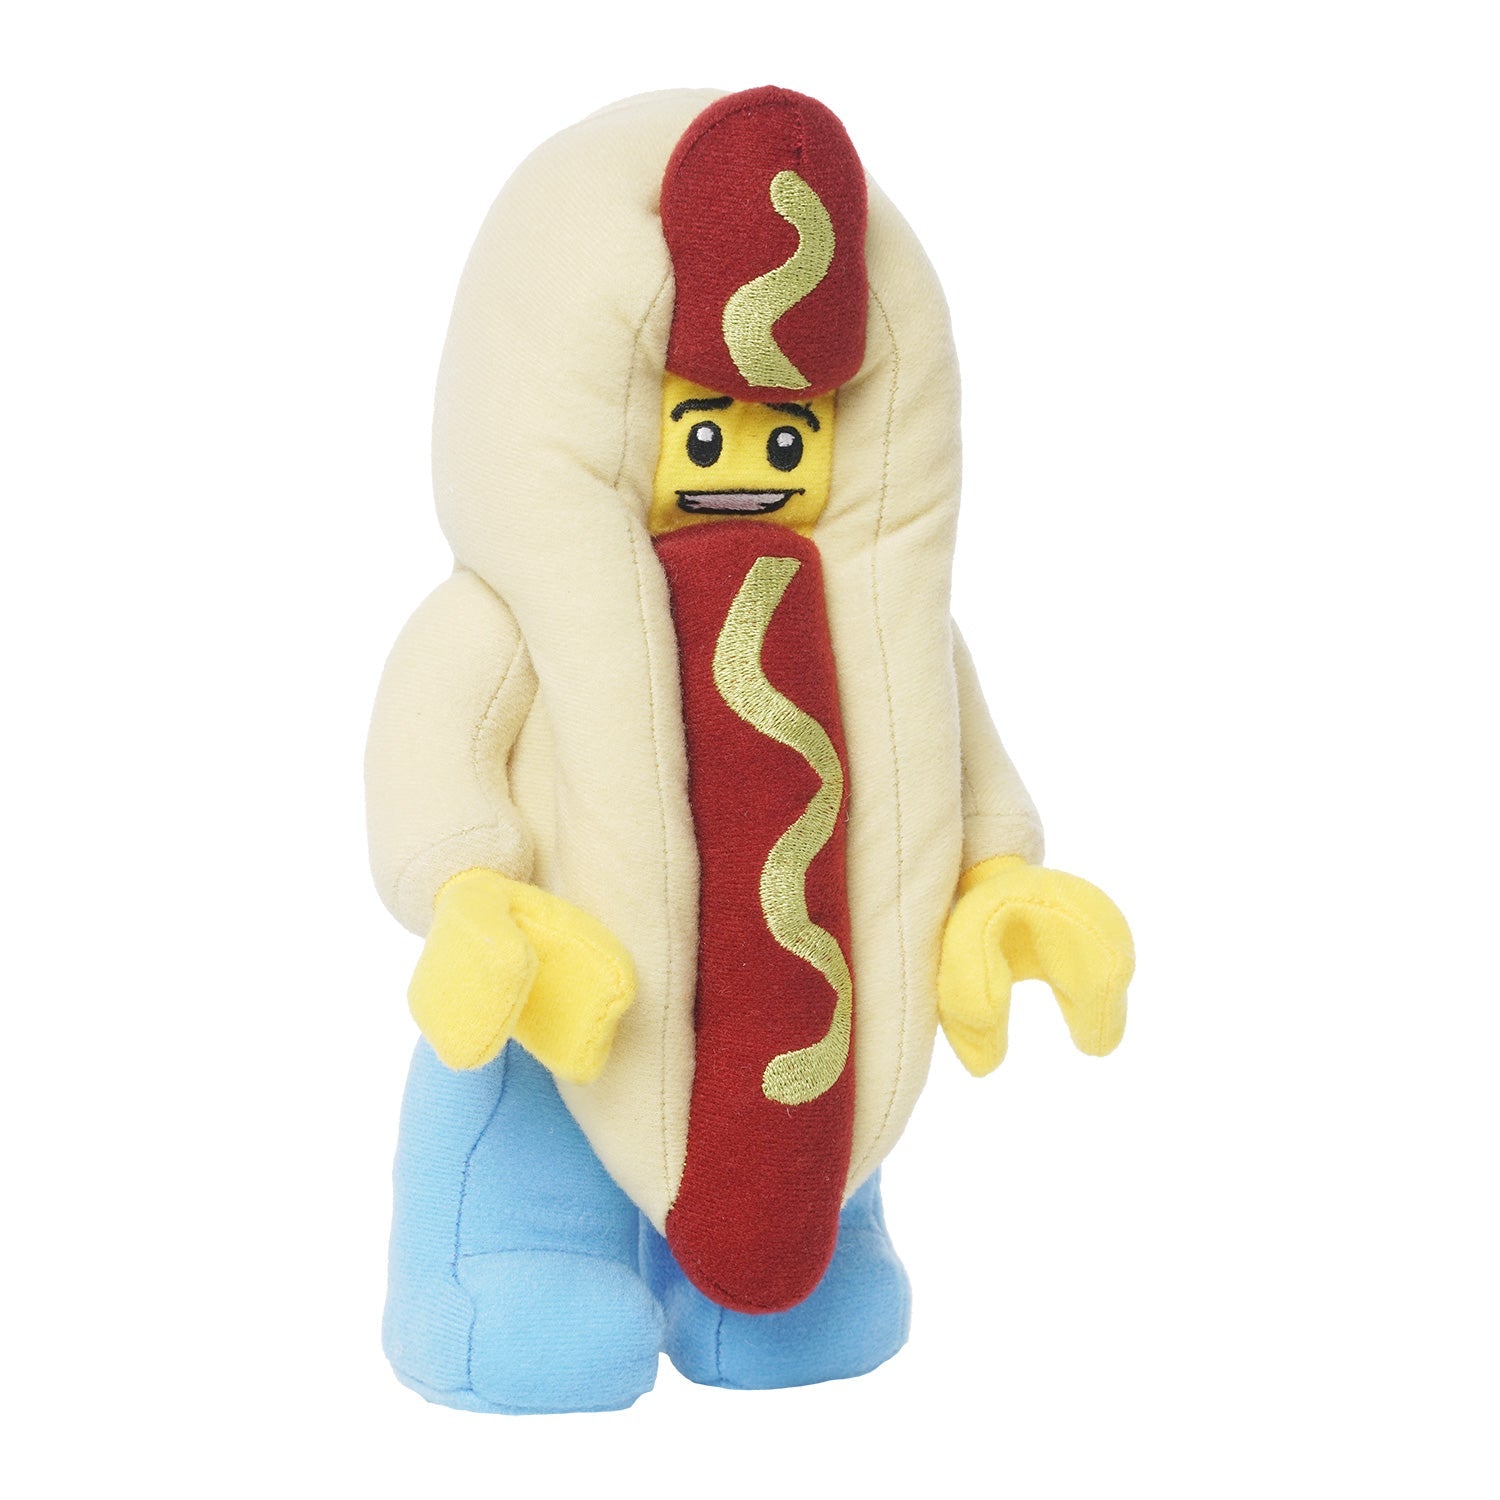 Lego Hot Dog Guy Plush Minifigure Small